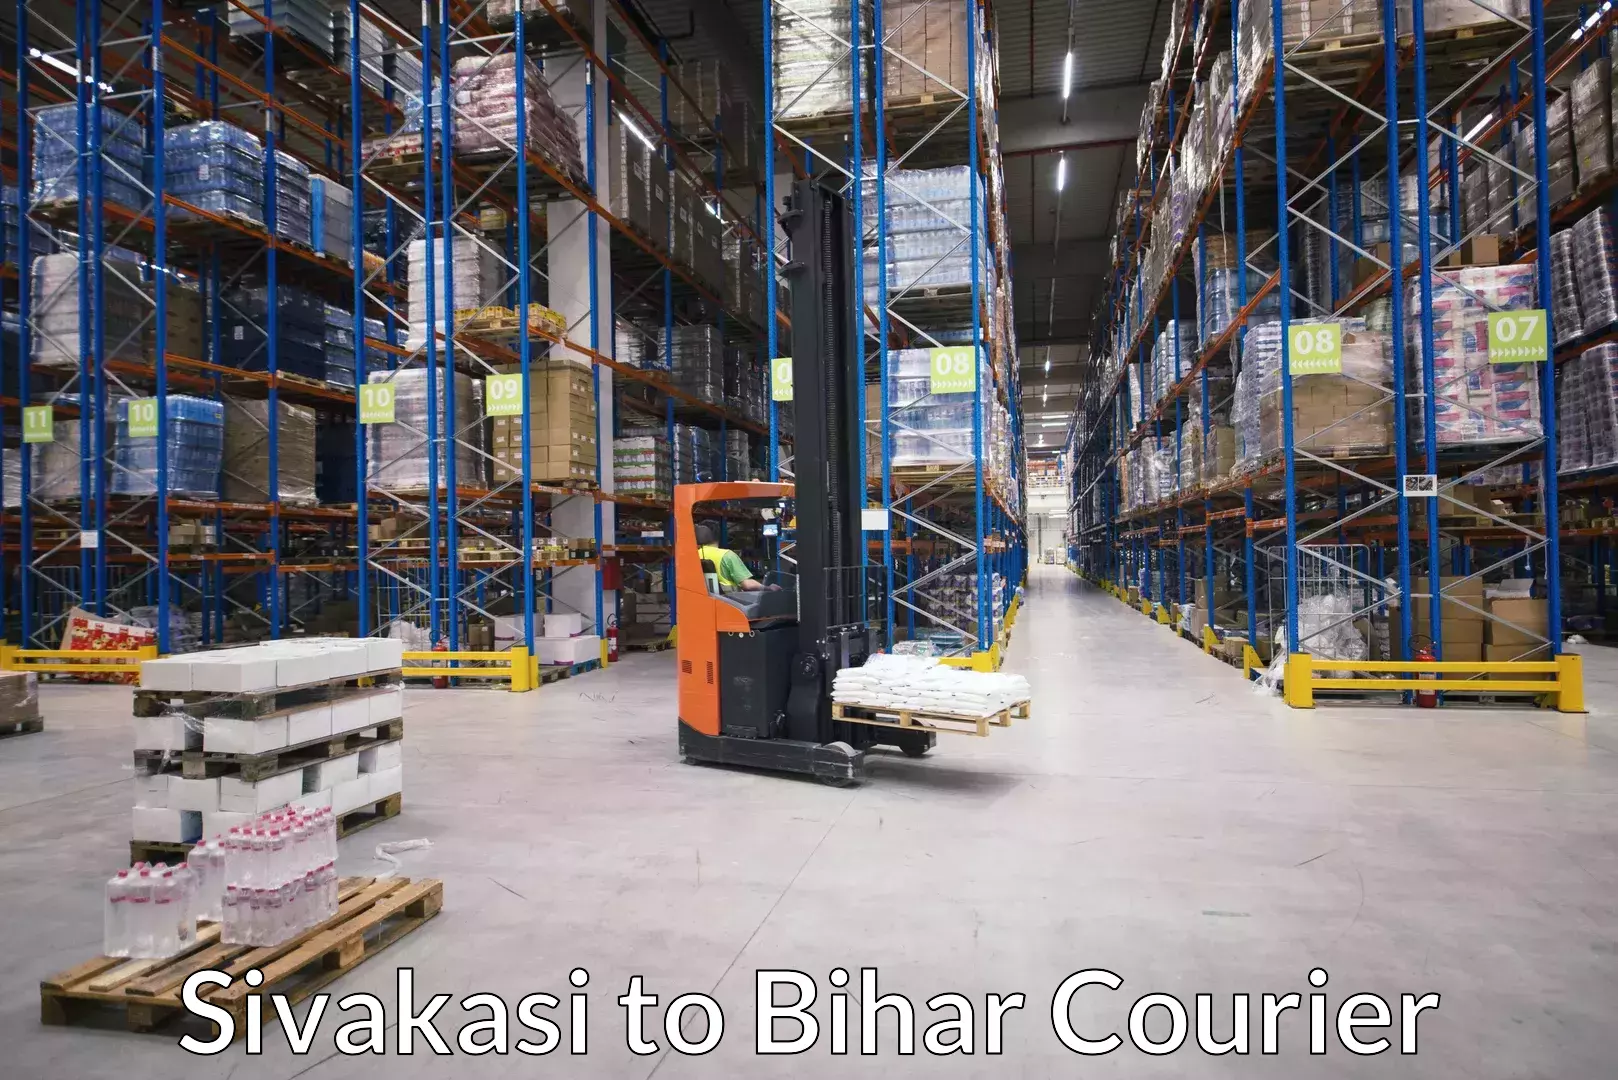 Luggage transport company Sivakasi to Kaluahi